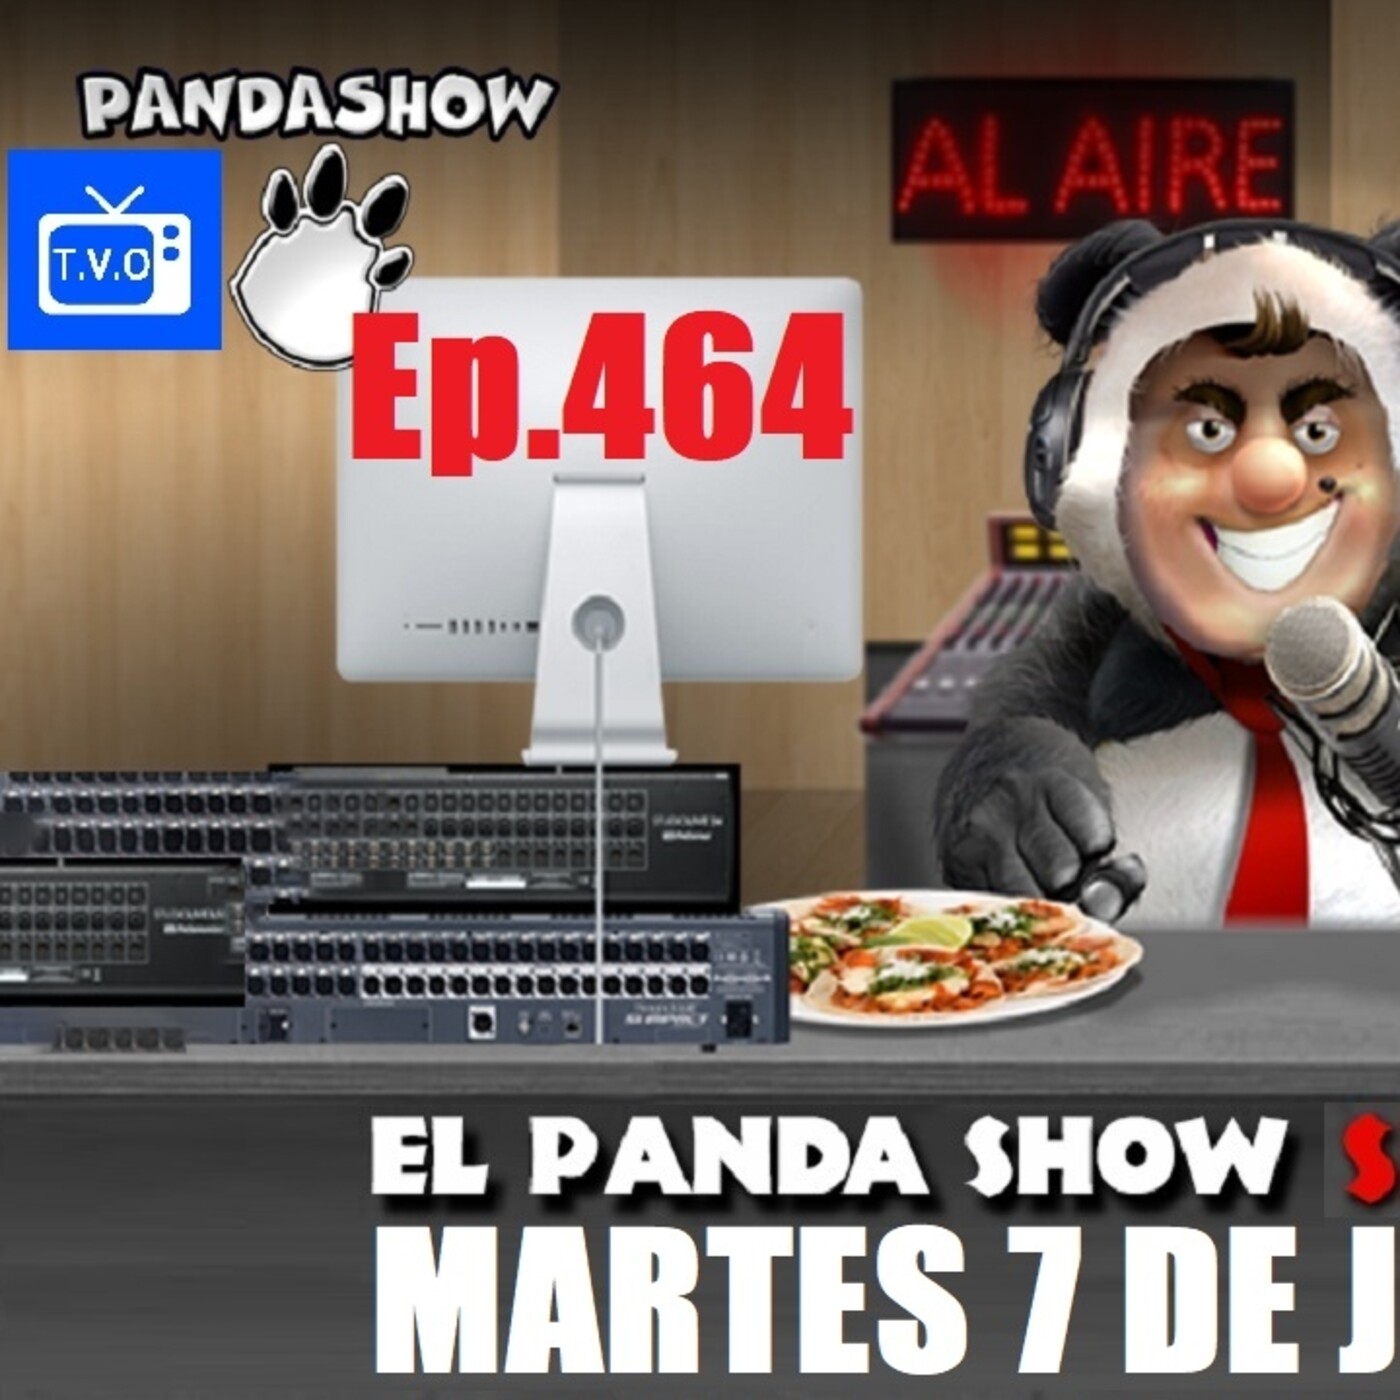 EL PANDA SHOW Ep. 464 MARTES 7 DE JULIO 2020